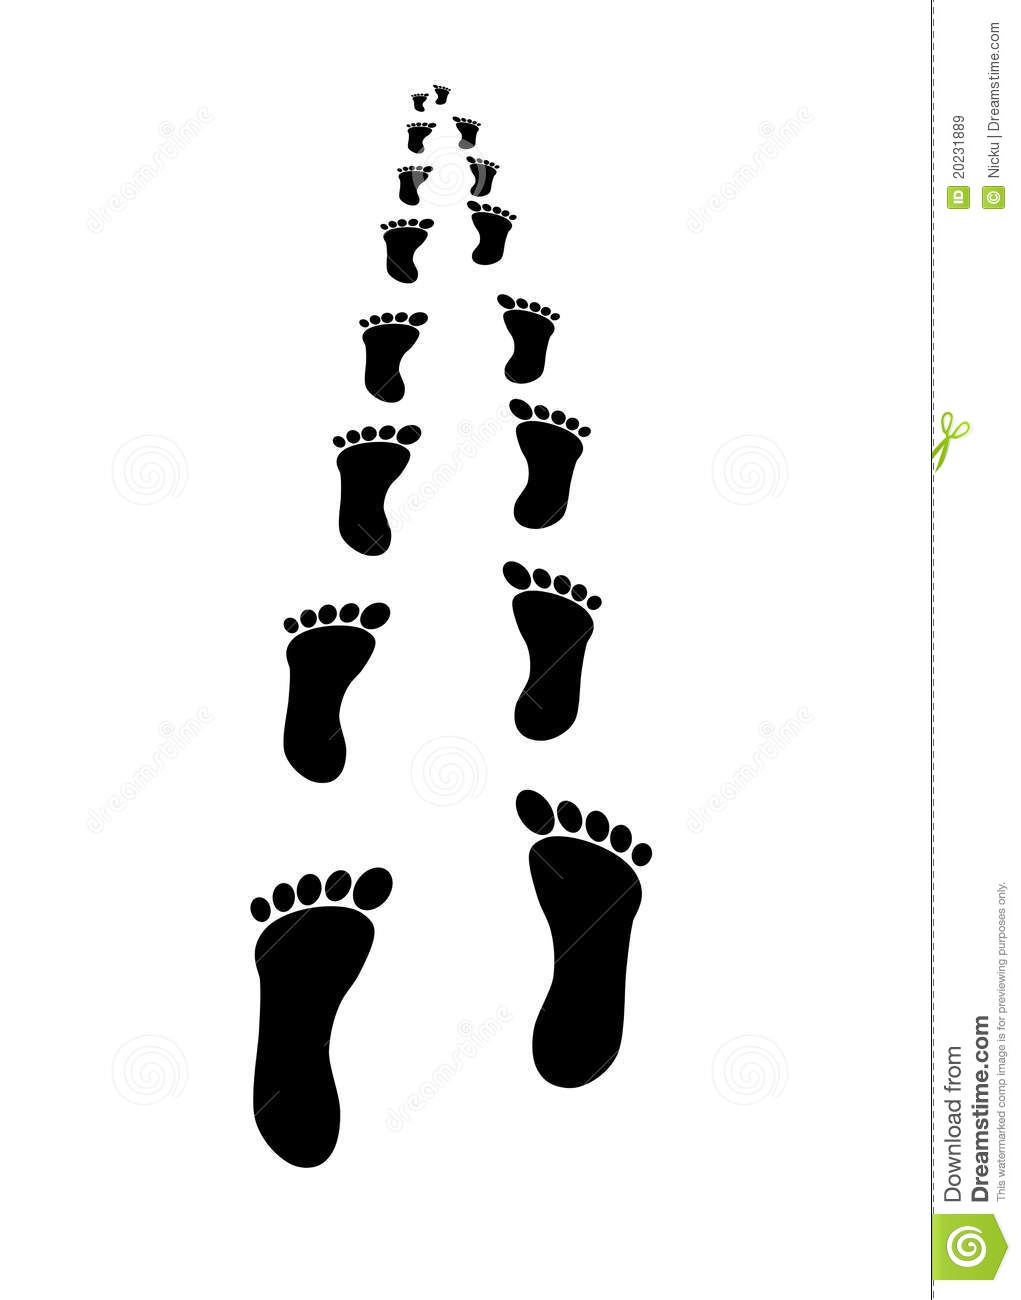 Walking Footsteps Clipart Footprints Illustration Design